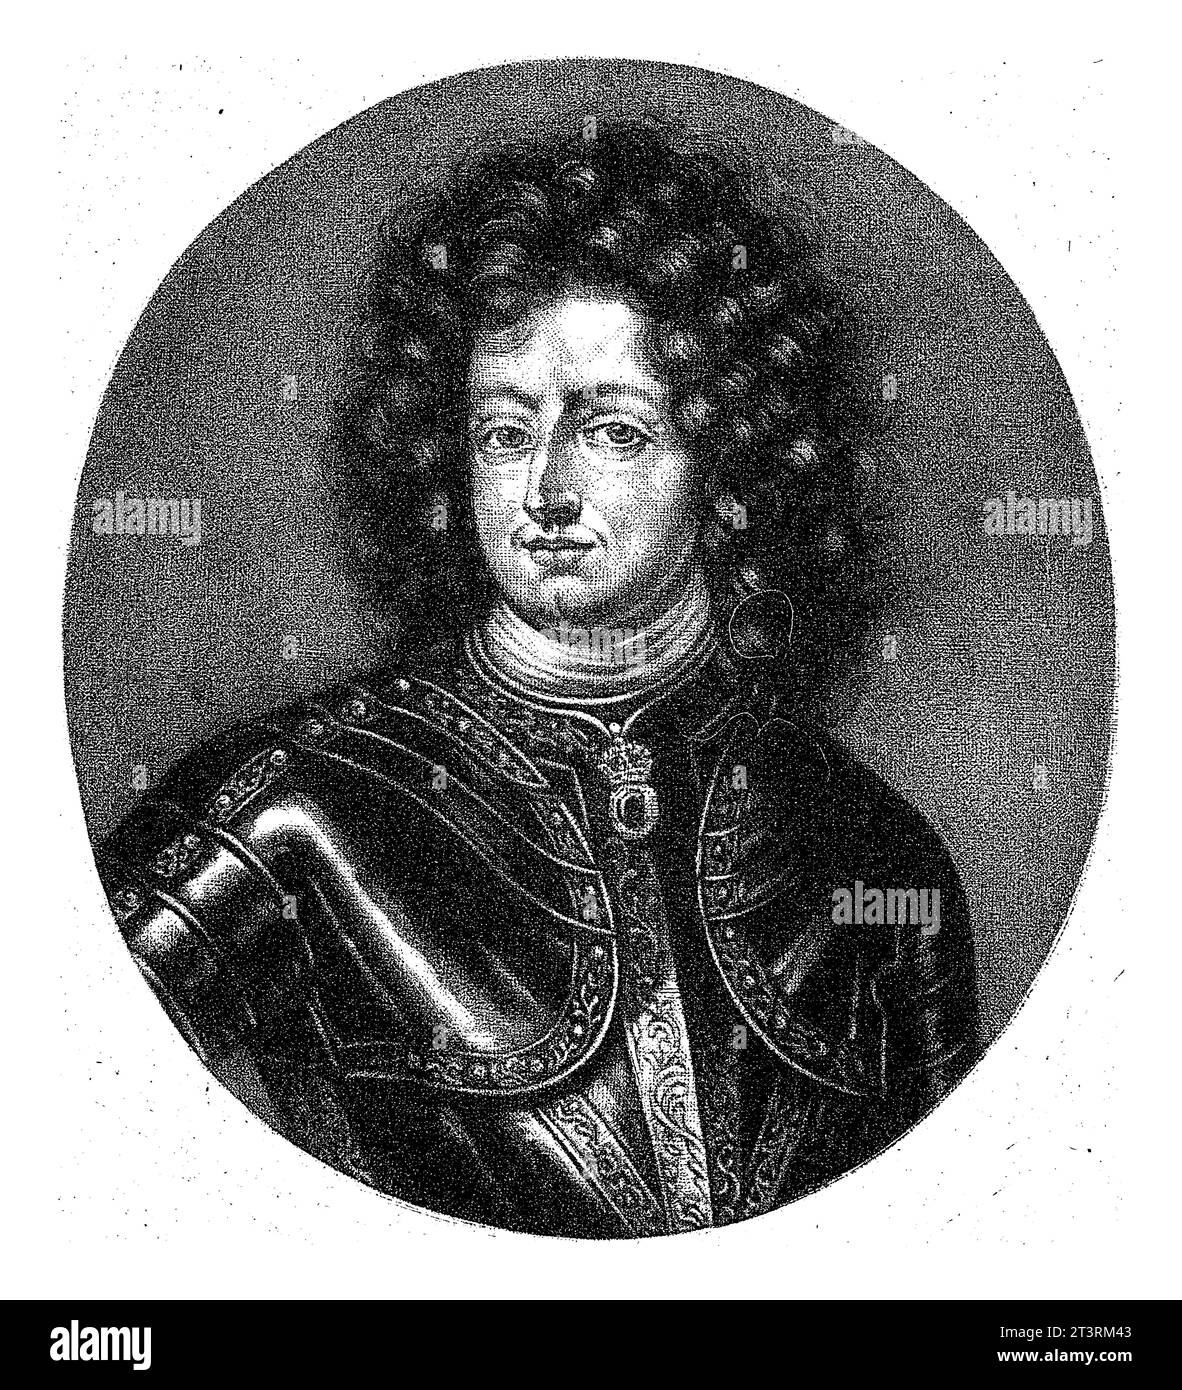 Retrato de Carlos XI, rey de Suecia, Pieter Schenk (I), 1670 - 1713 Foto de stock